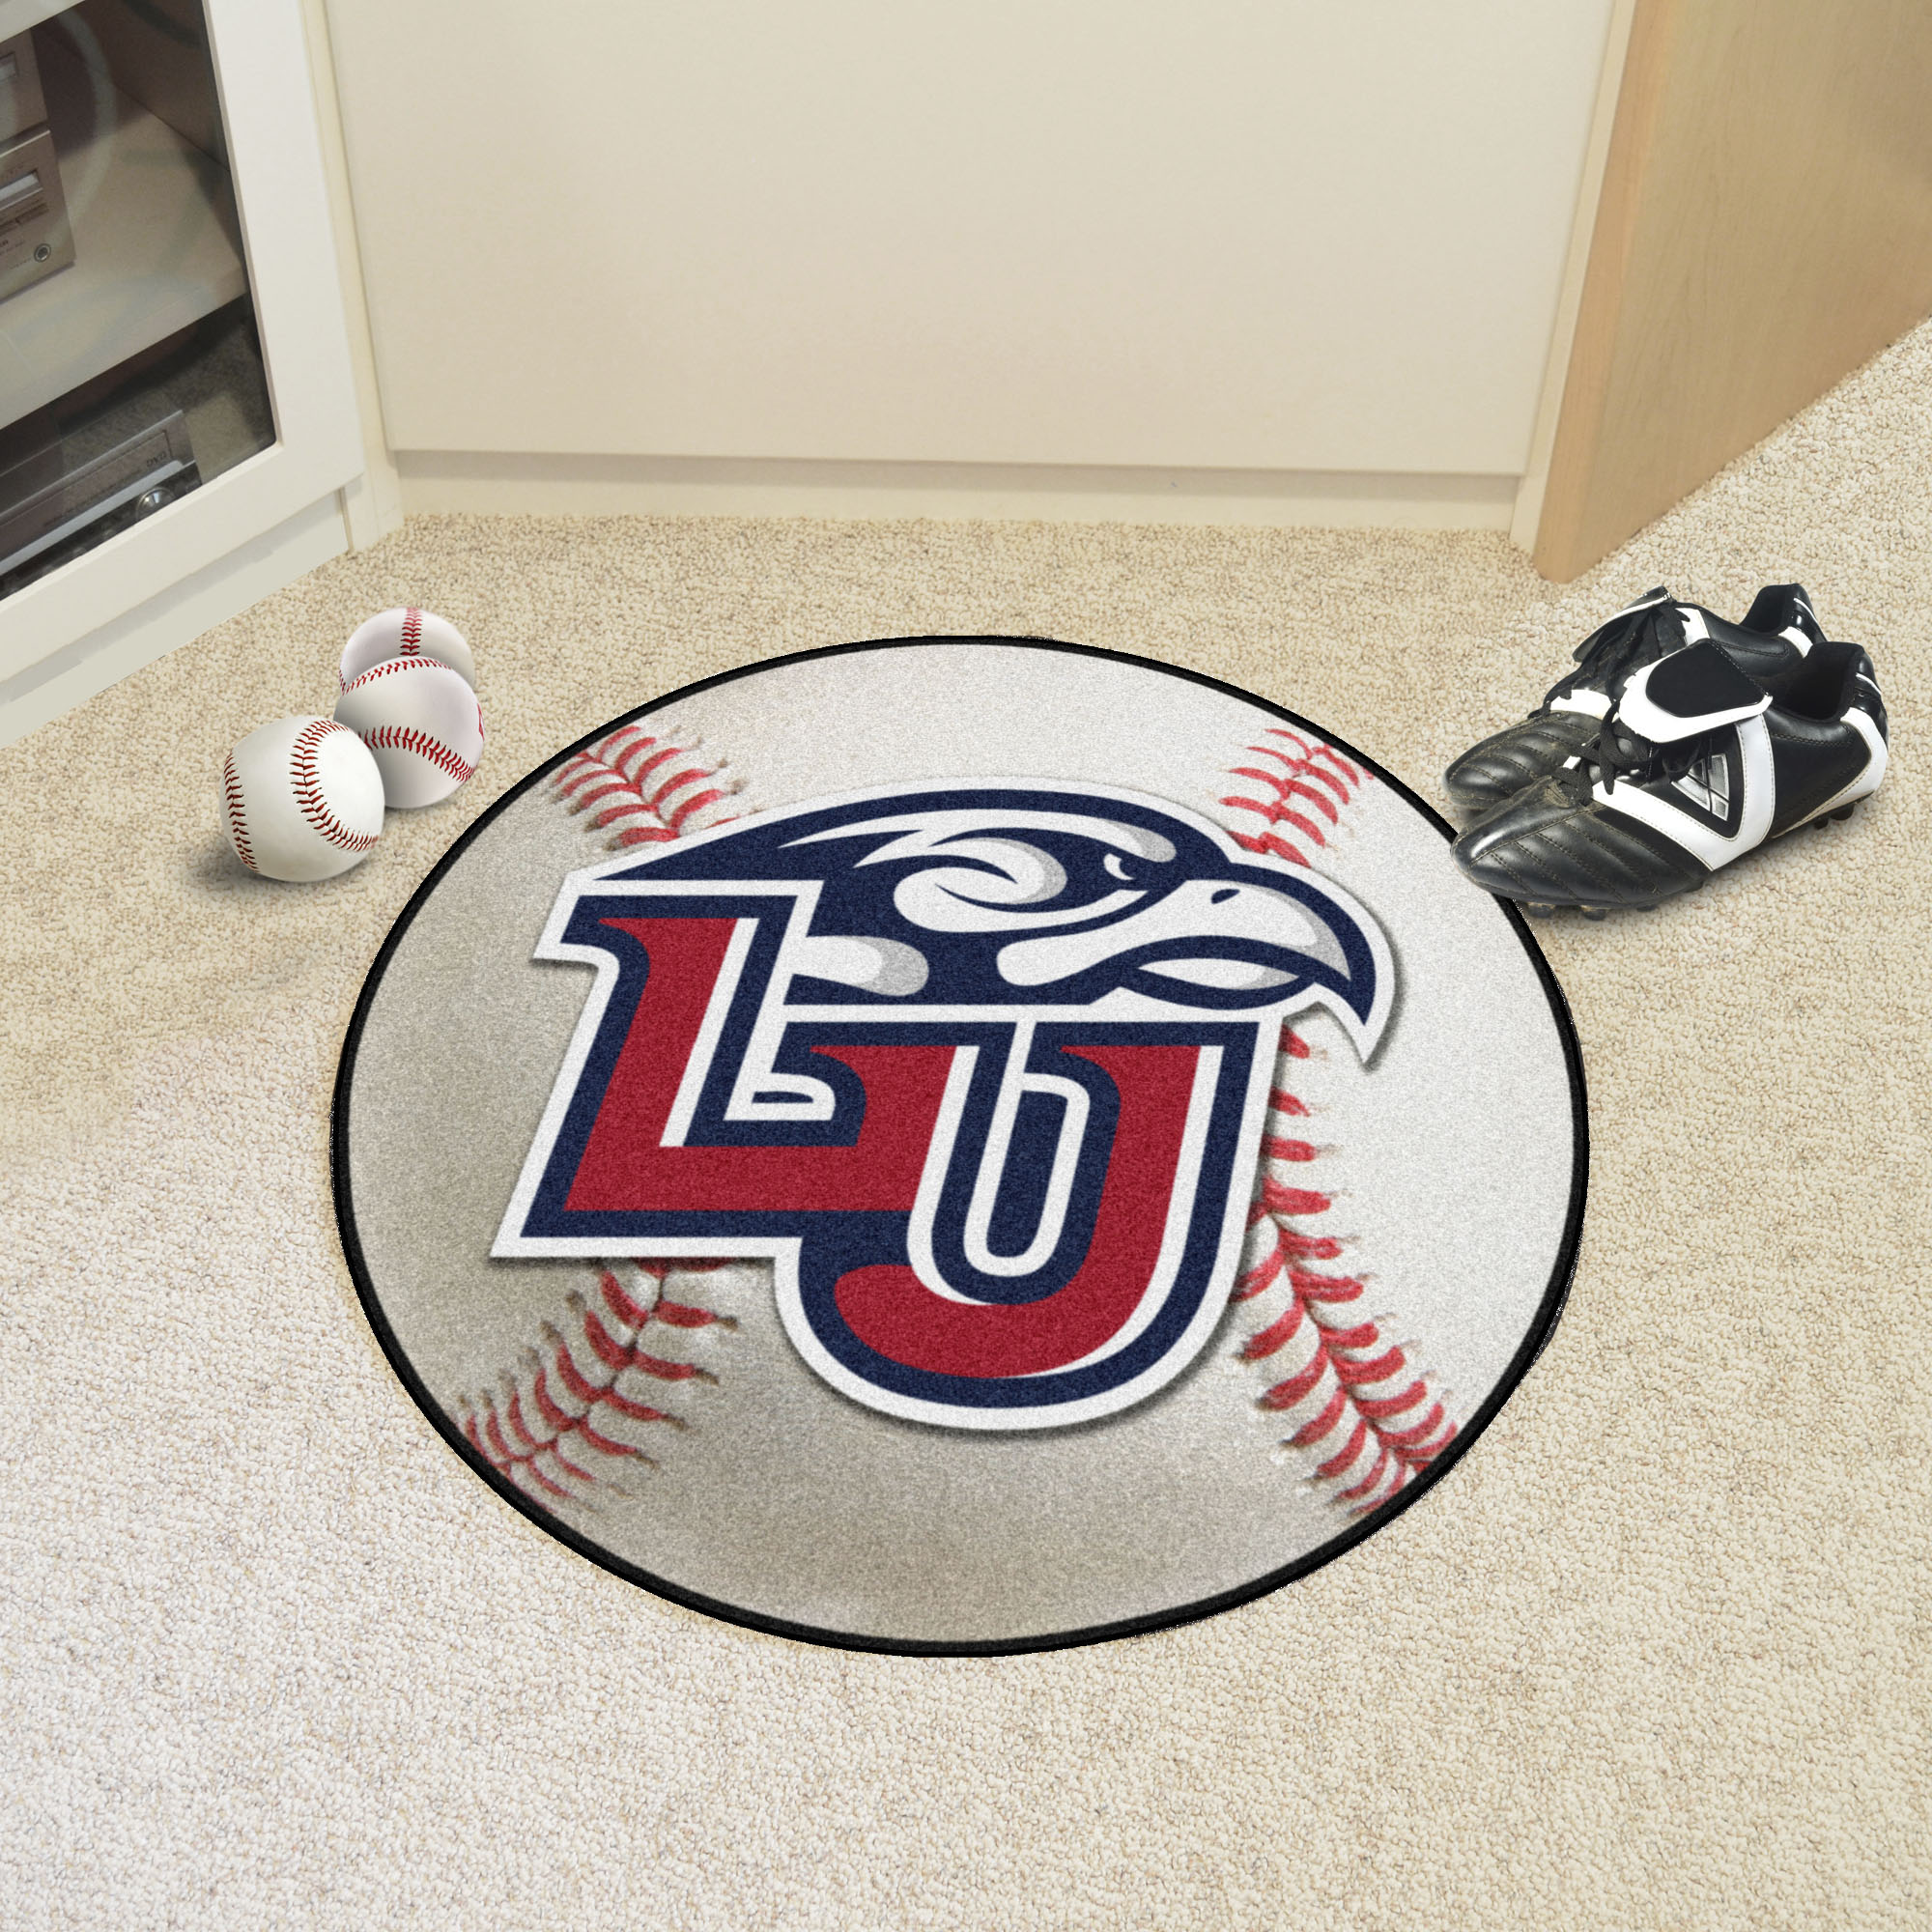 Liberty University Ball Shaped Area Rugs (Ball Shaped Area Rugs: Baseball)